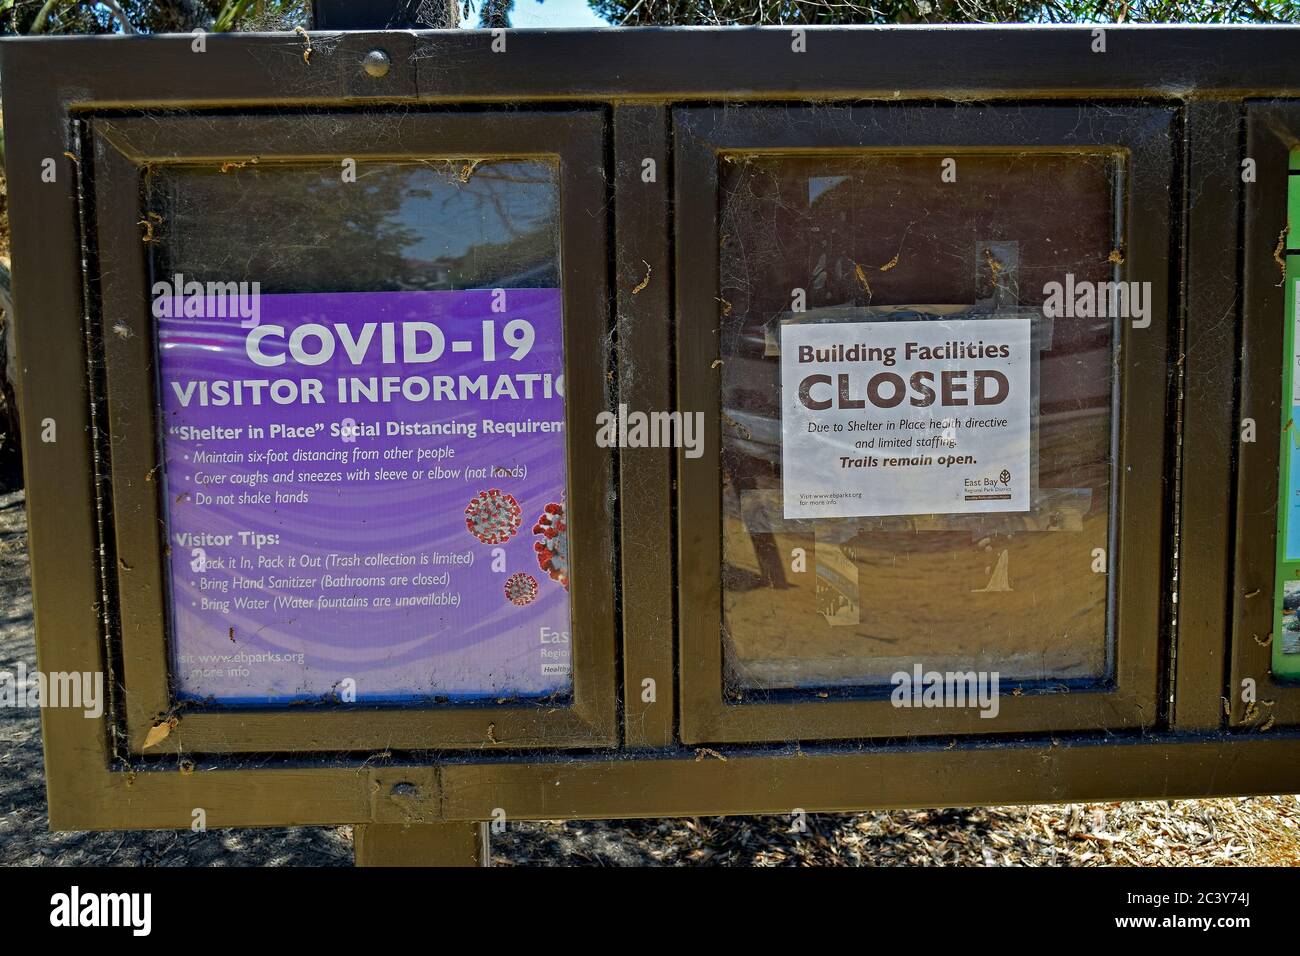 Covid-19 Besucherinformationen und Gebäude geschlossen, Wanderwege offen bleiben, Alameda Creek Regional Trail Stables Staging Area, Kalifornien Stockfoto